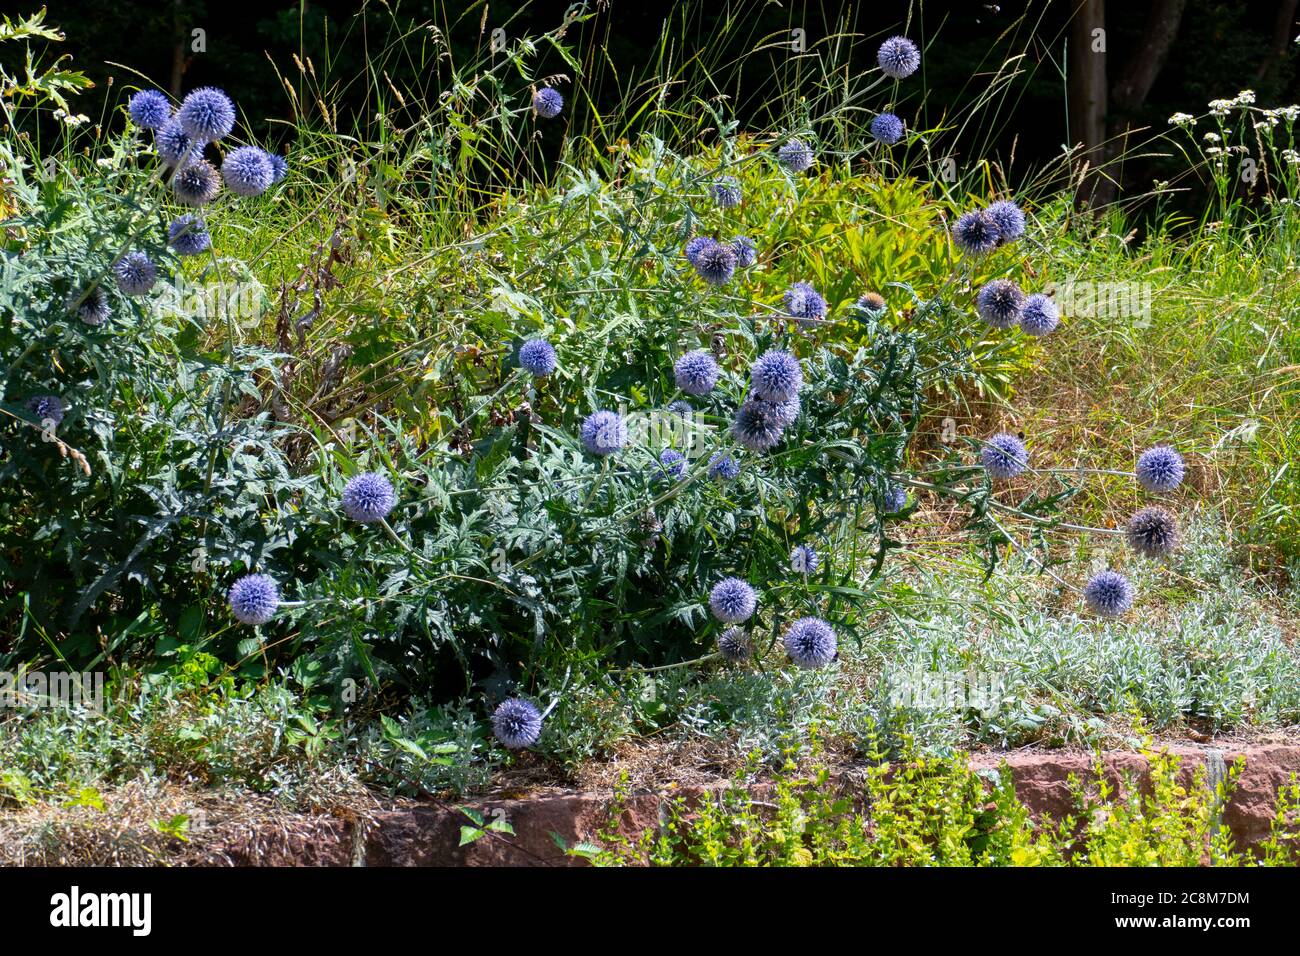 Blaue Kugeldistel Bl 252 te Echinops vor gr 252 nem Hintergrund Stock Photo 